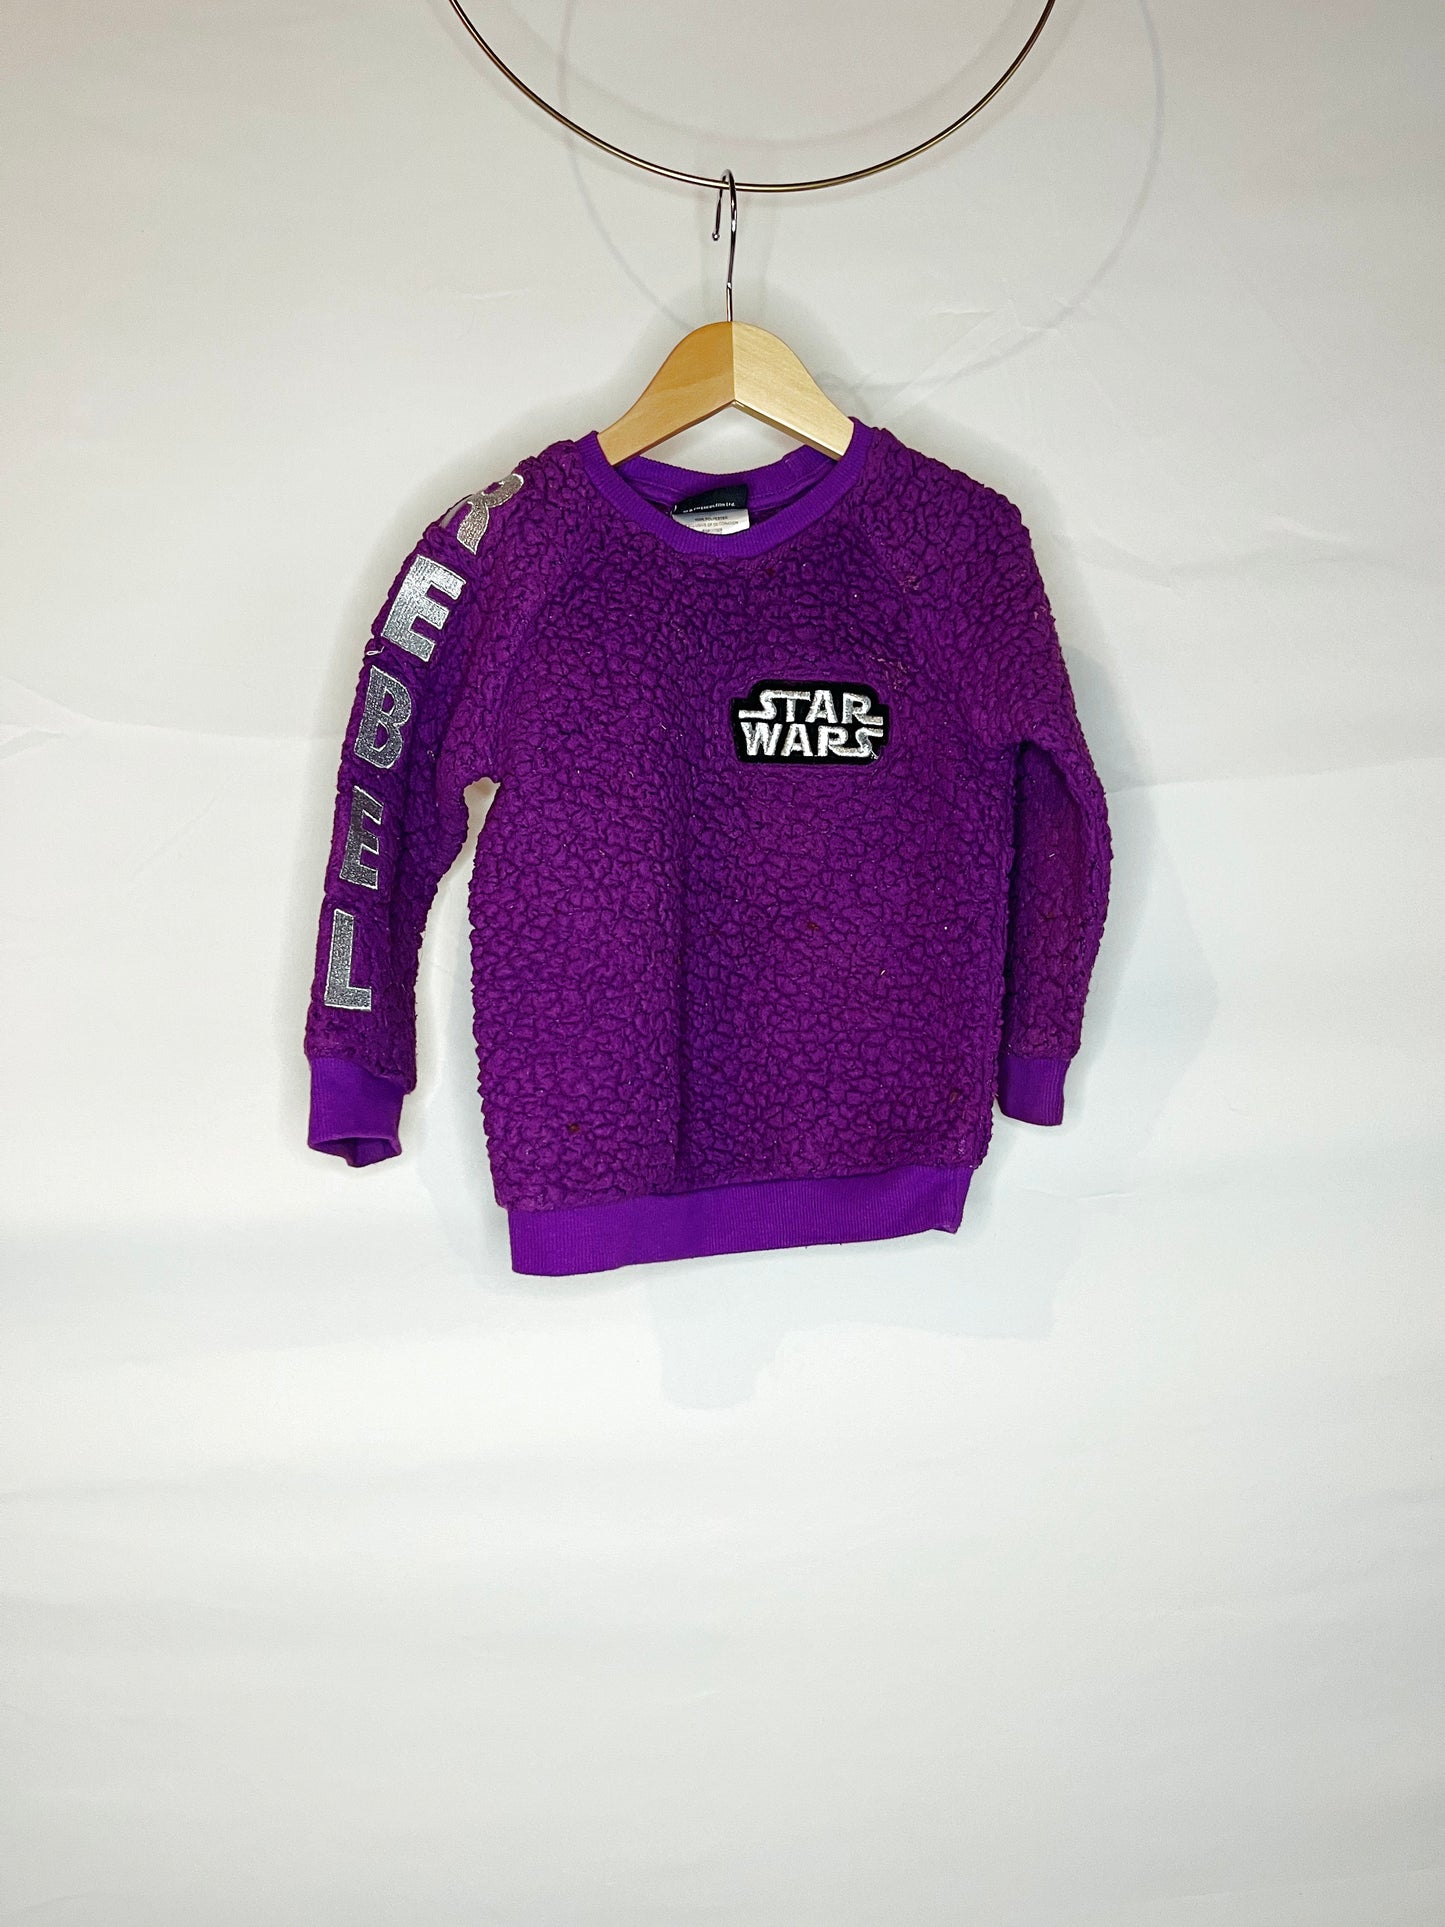 Fuzzy Purple Star Wars "Rebel" Sweatshirt